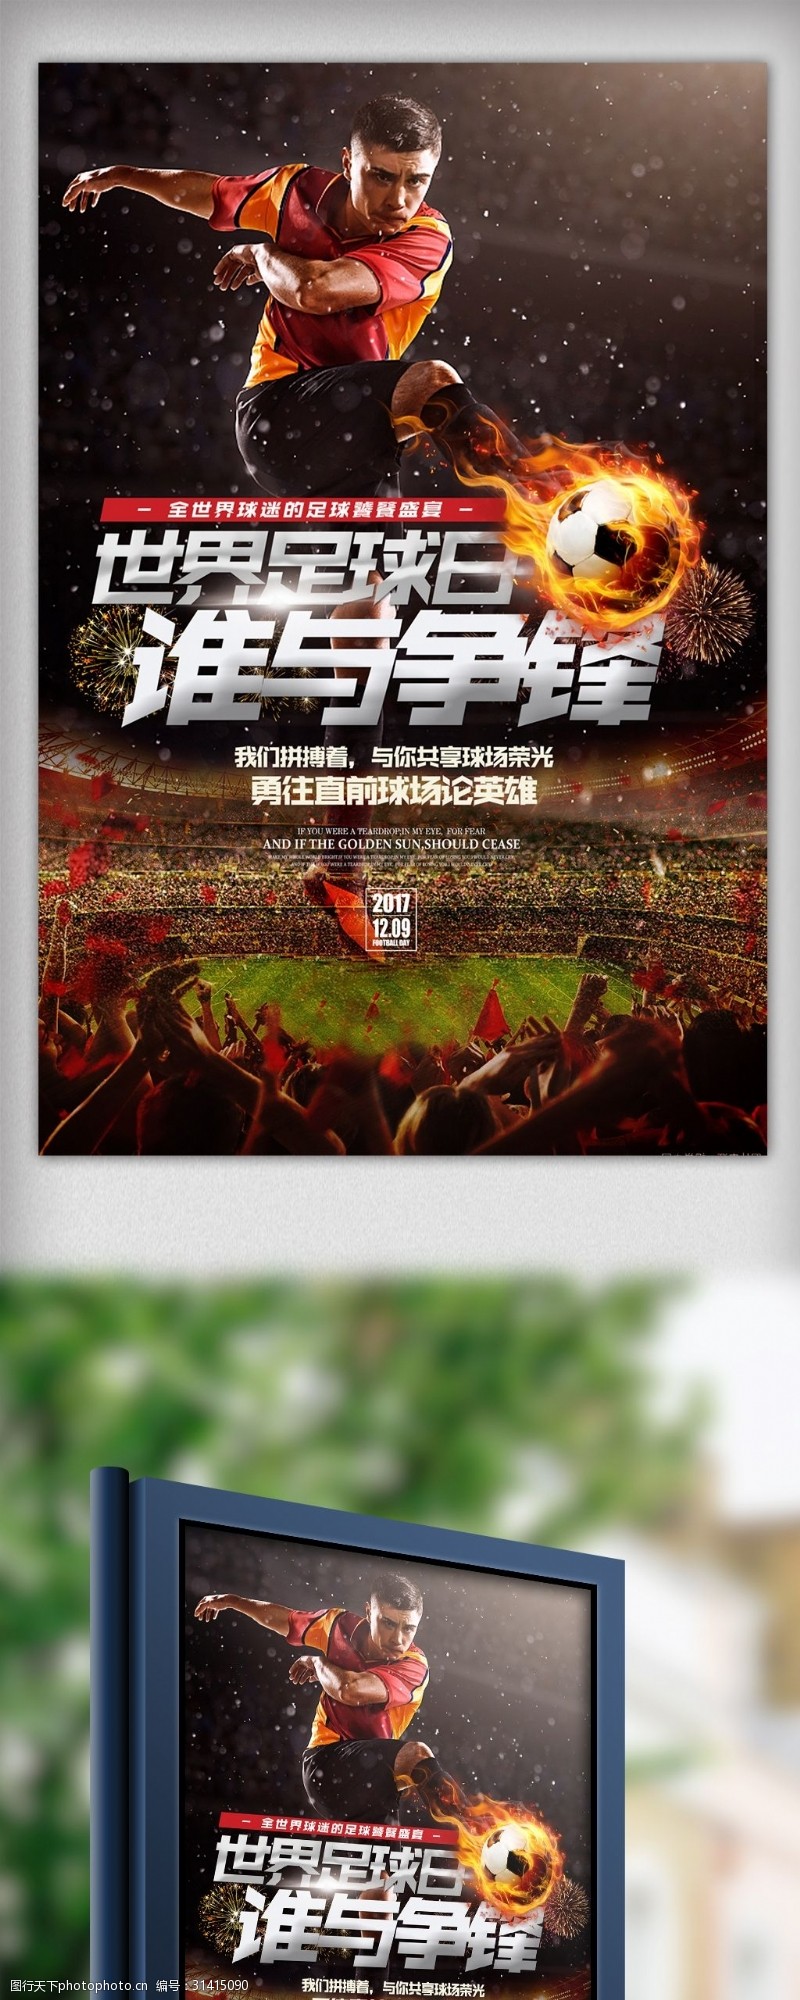 足球比赛奖杯酷炫黑金2018世界杯体育宣传海报设计模板